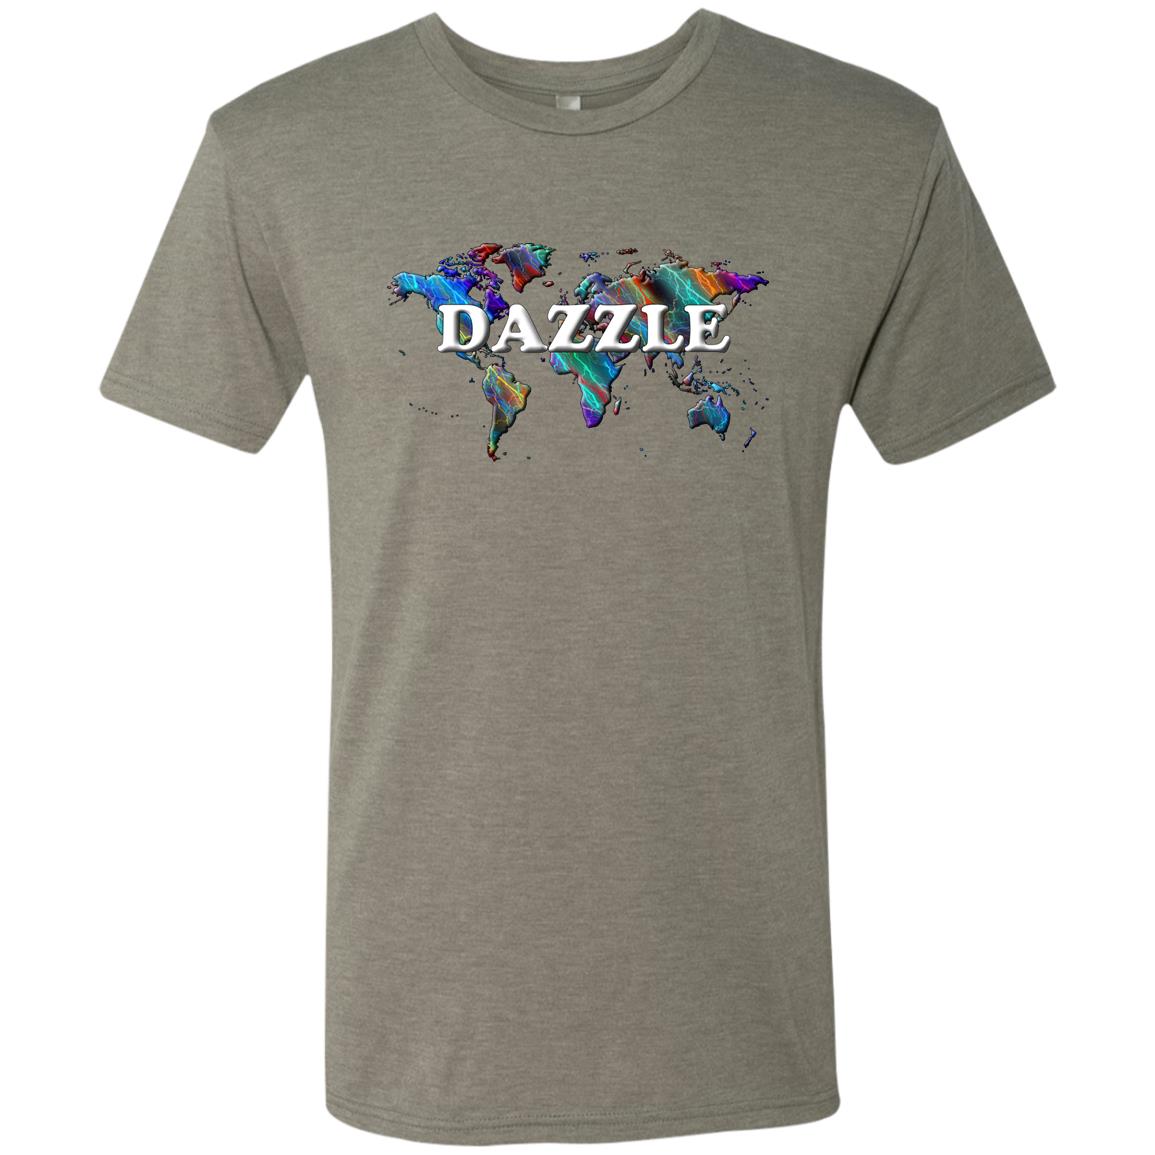 Dazzle Statement T-Shirt